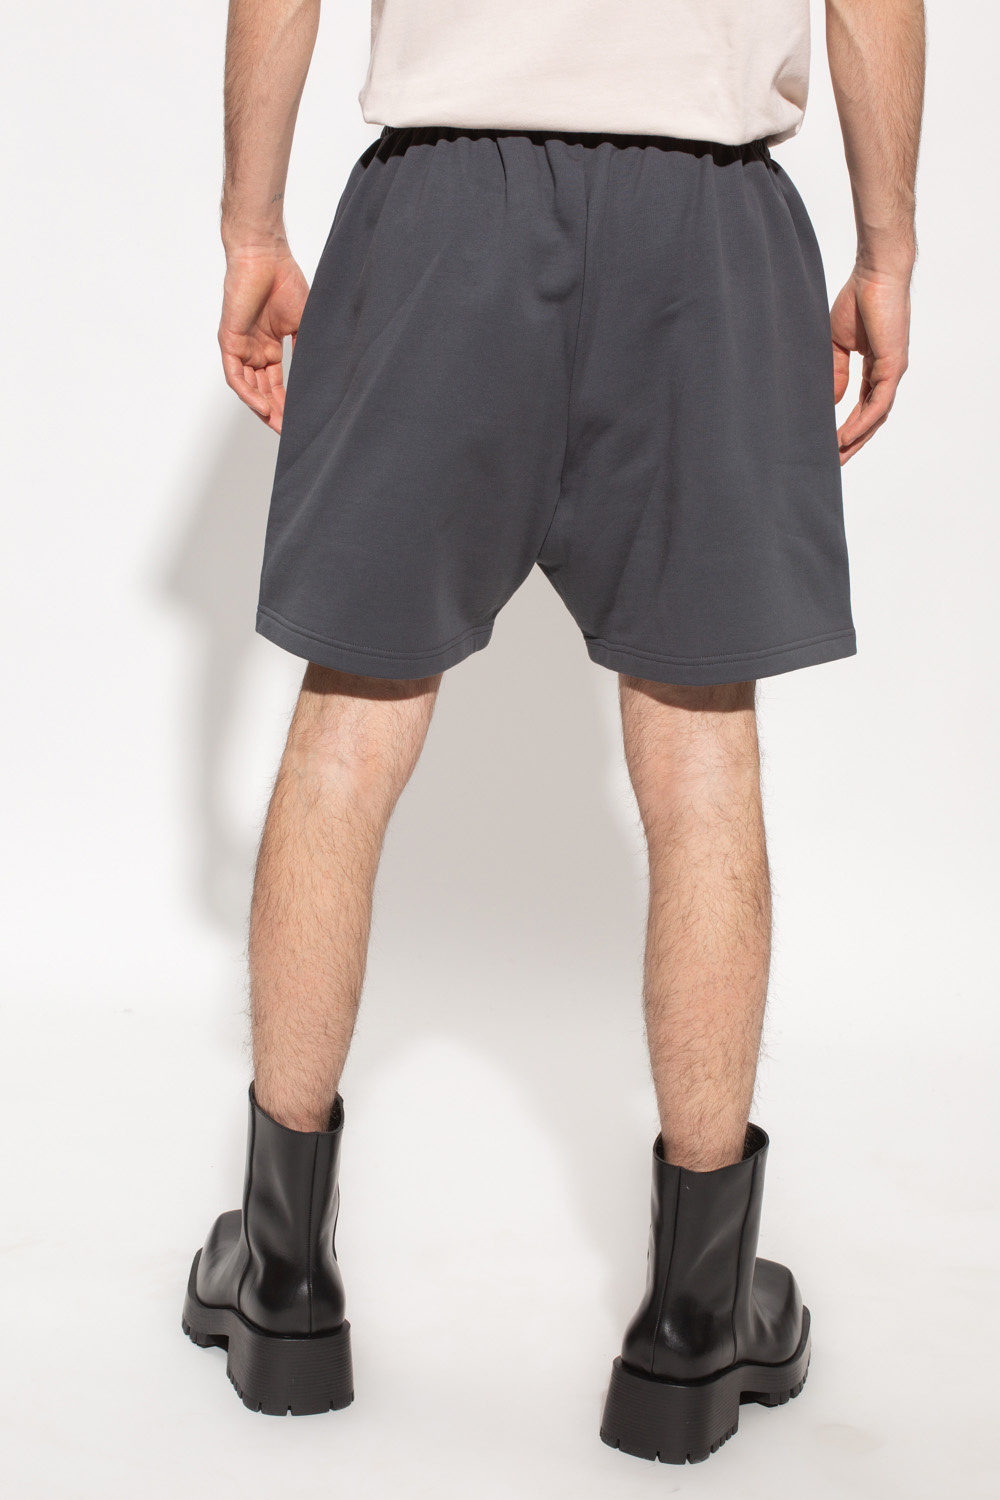 Balenciaga High-Rise Woven Shorts